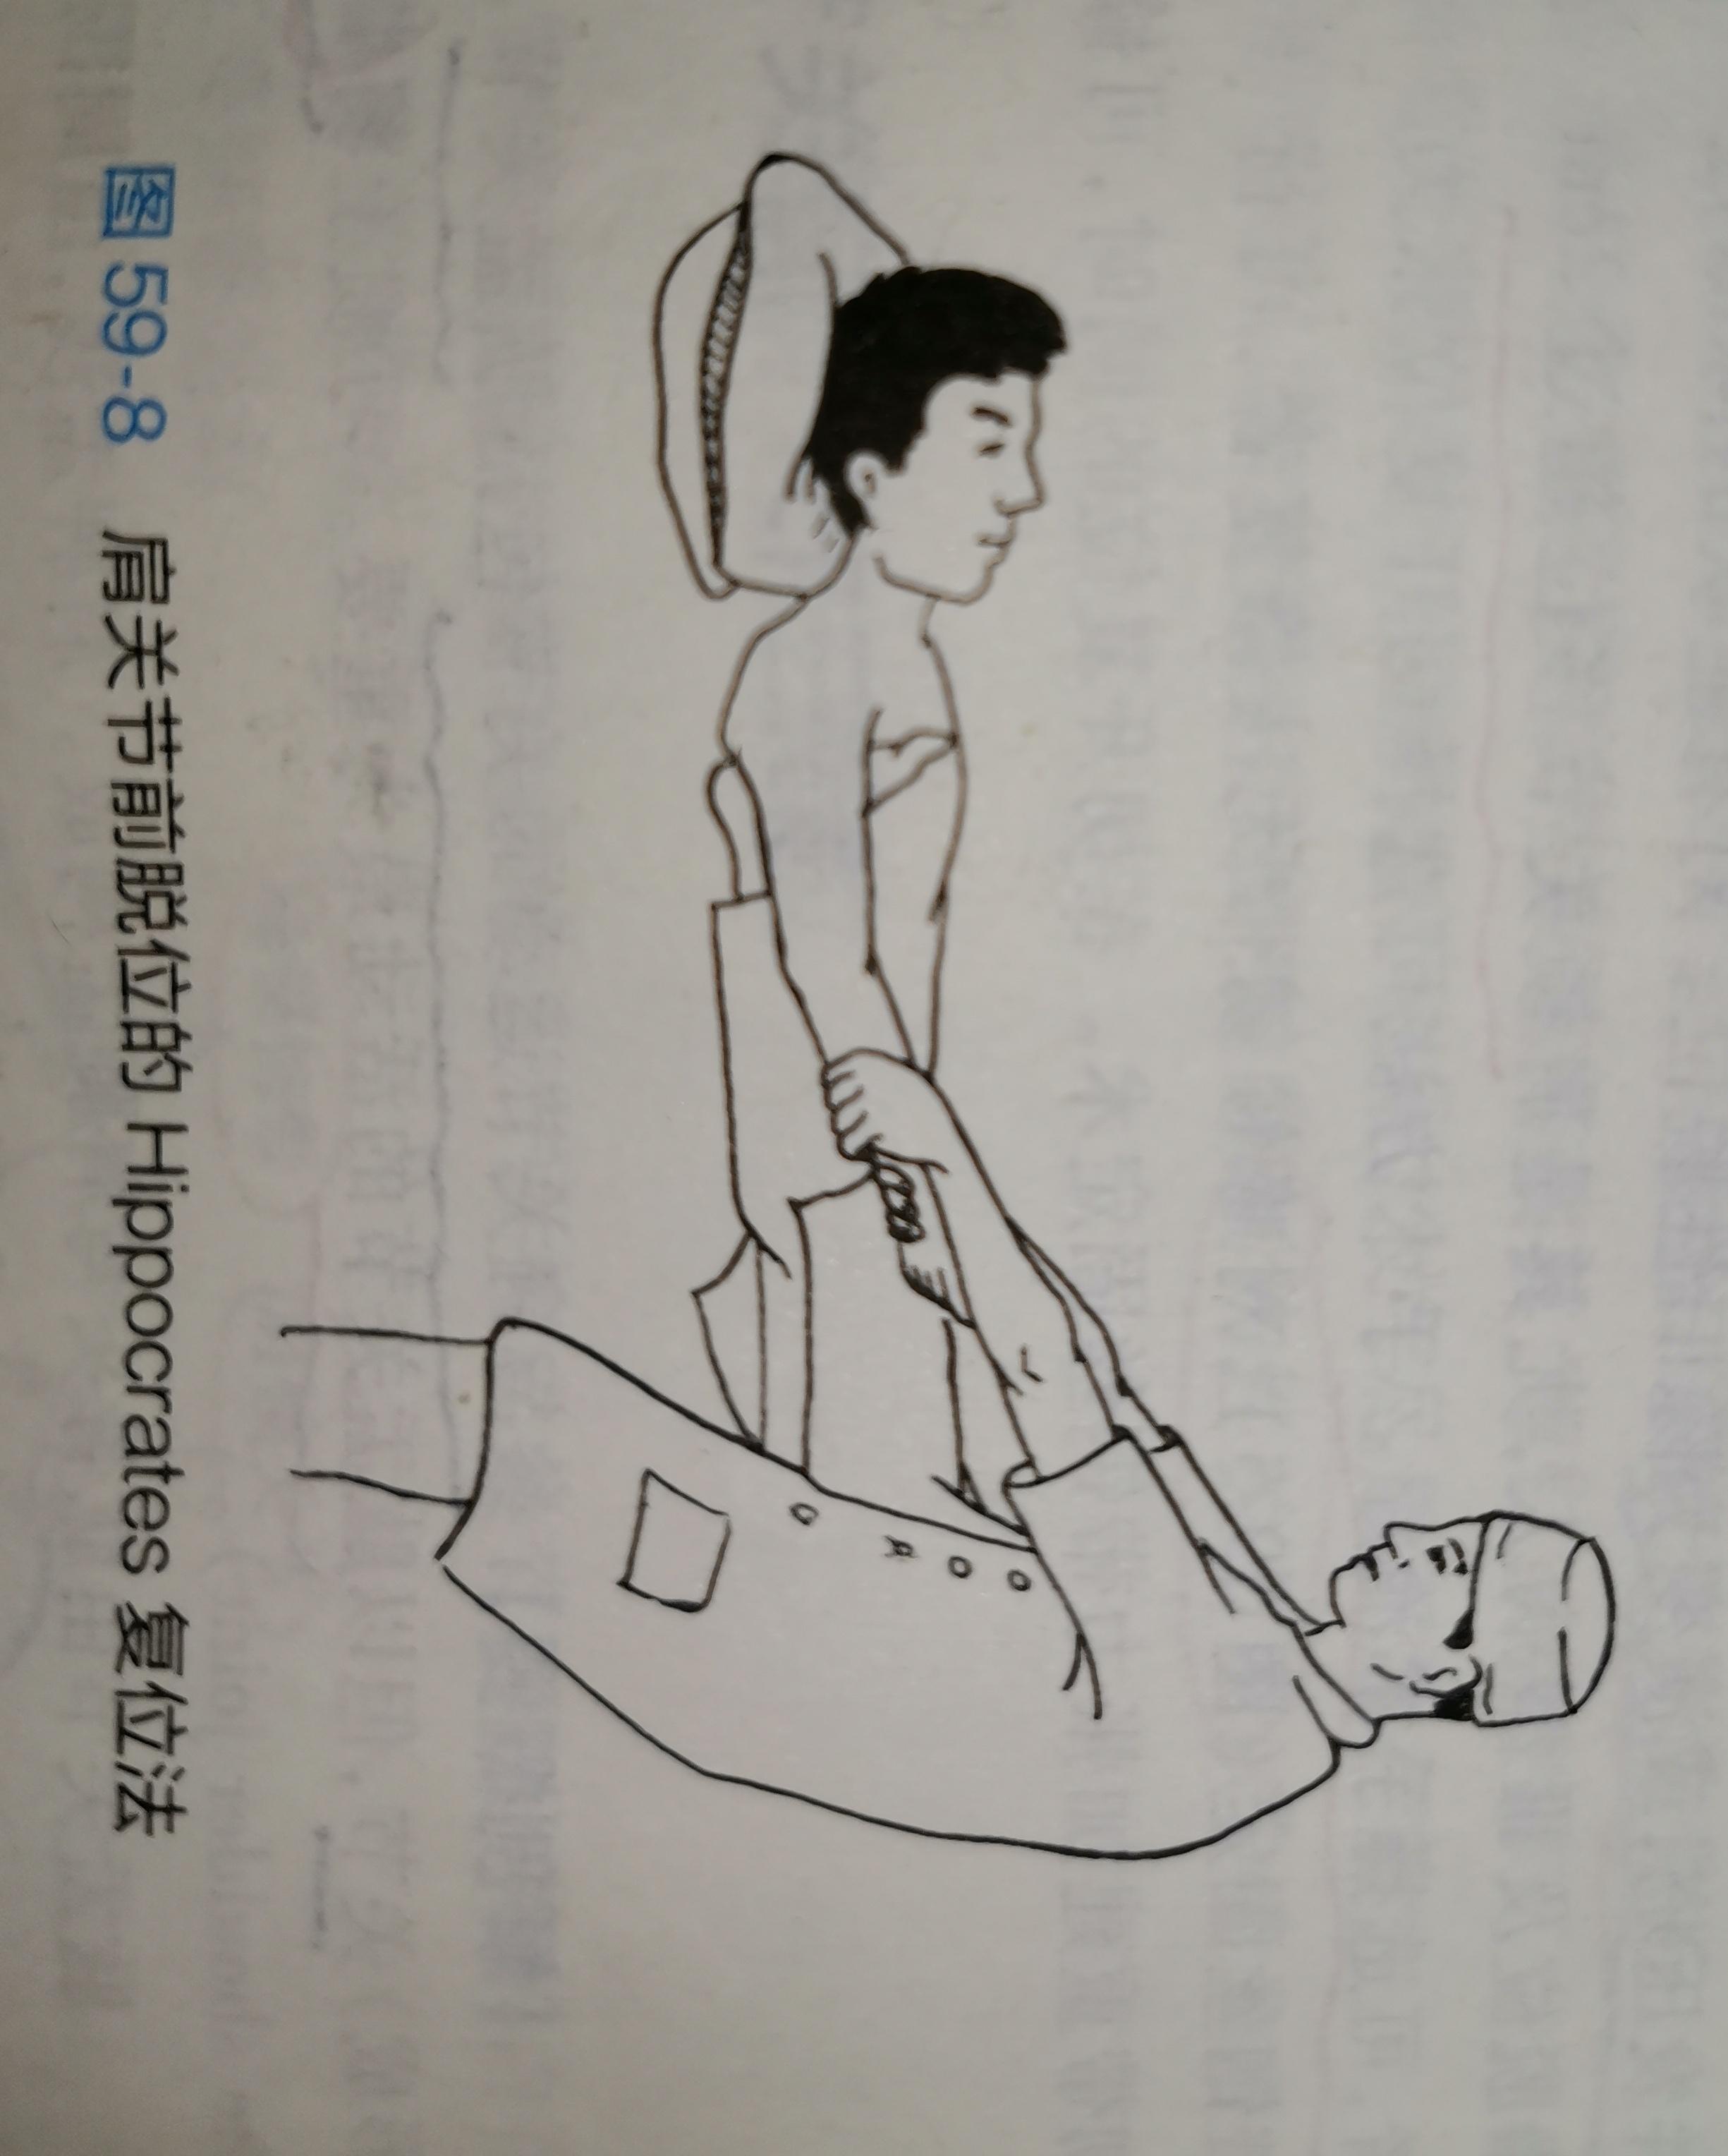 肩关节脱位足蹬法步骤图片